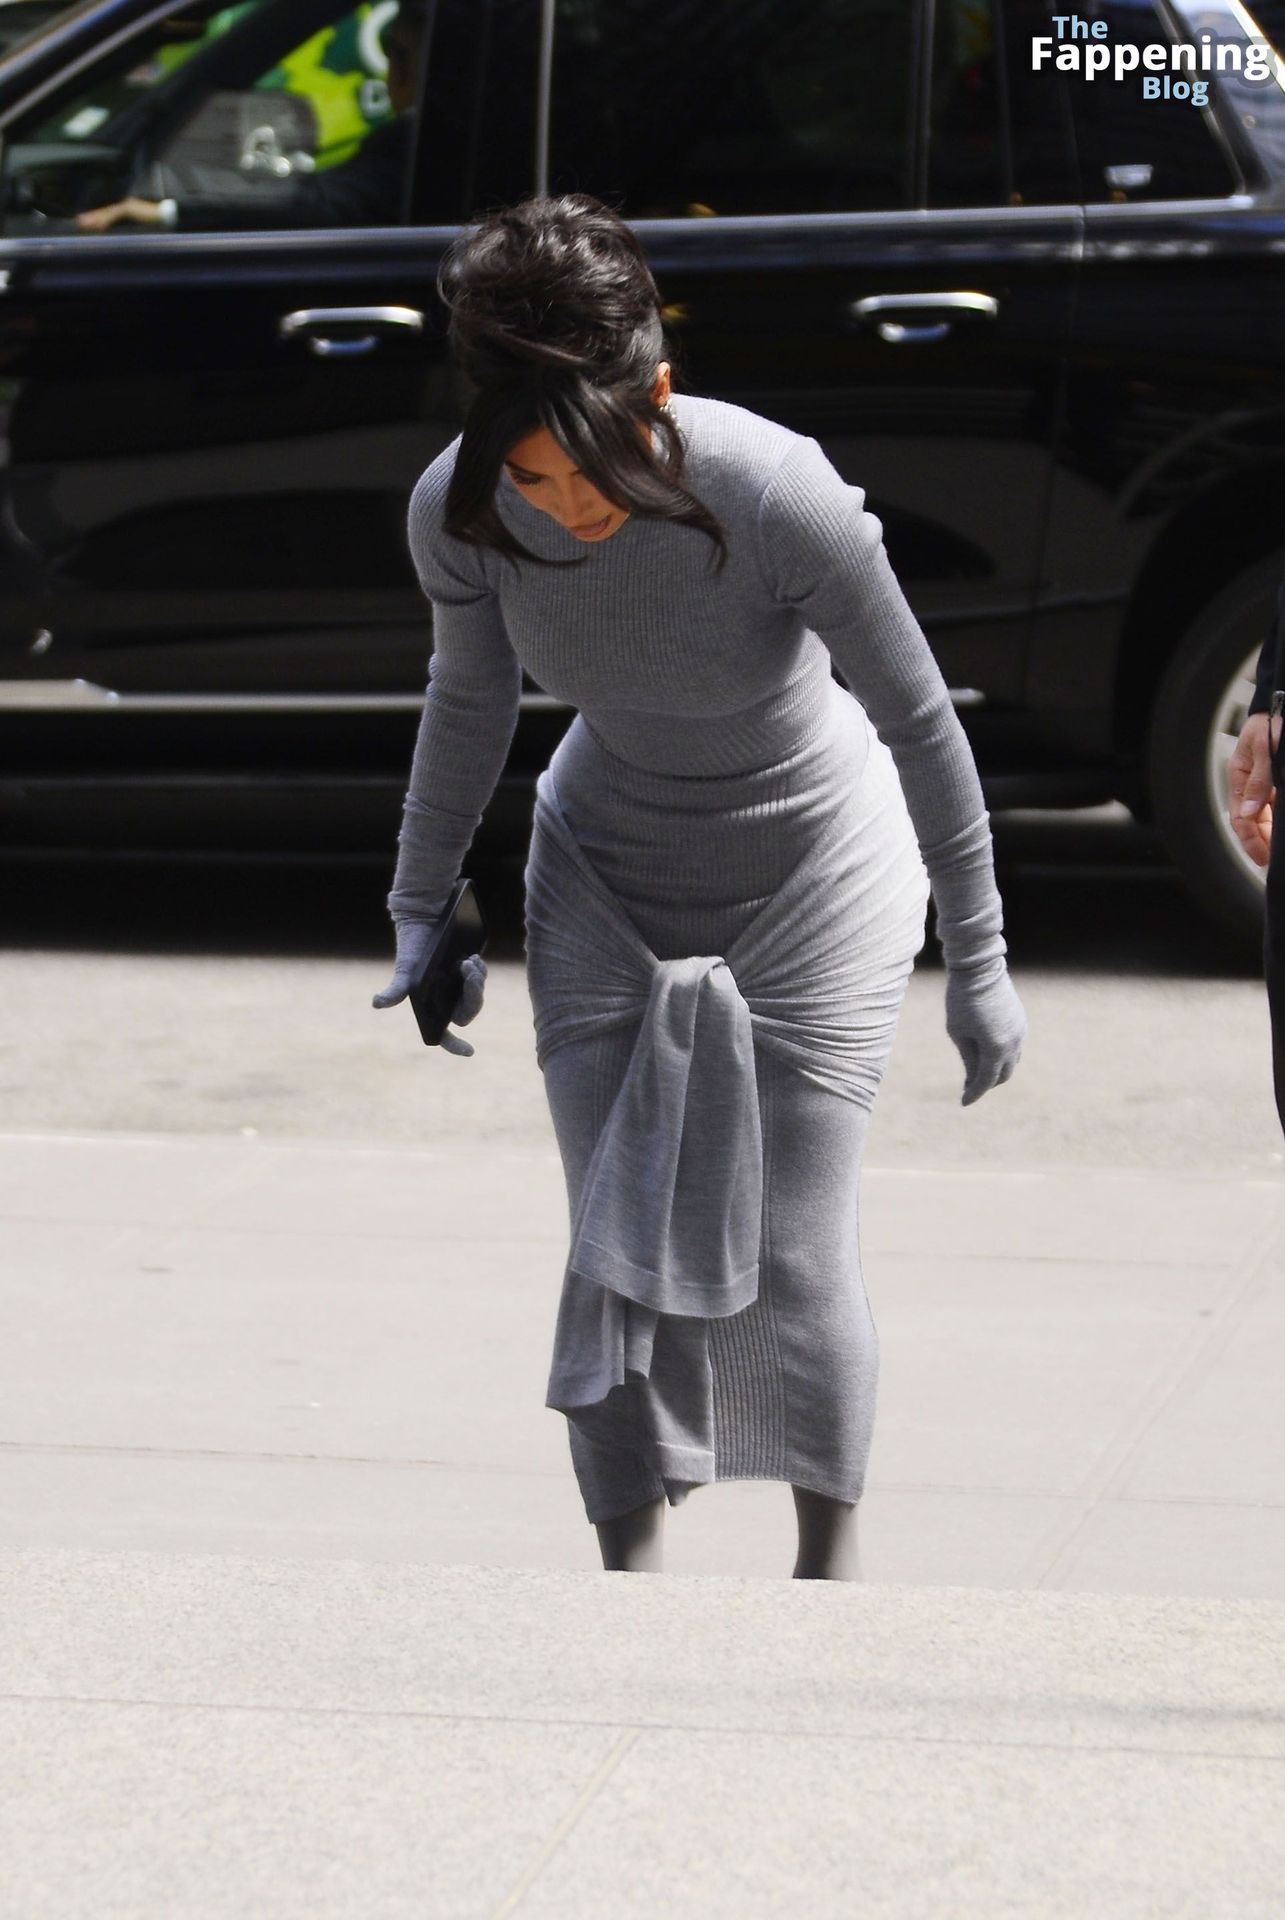 Kim-Kardashian-Sexy-The-Fappening-Blog-13.jpg